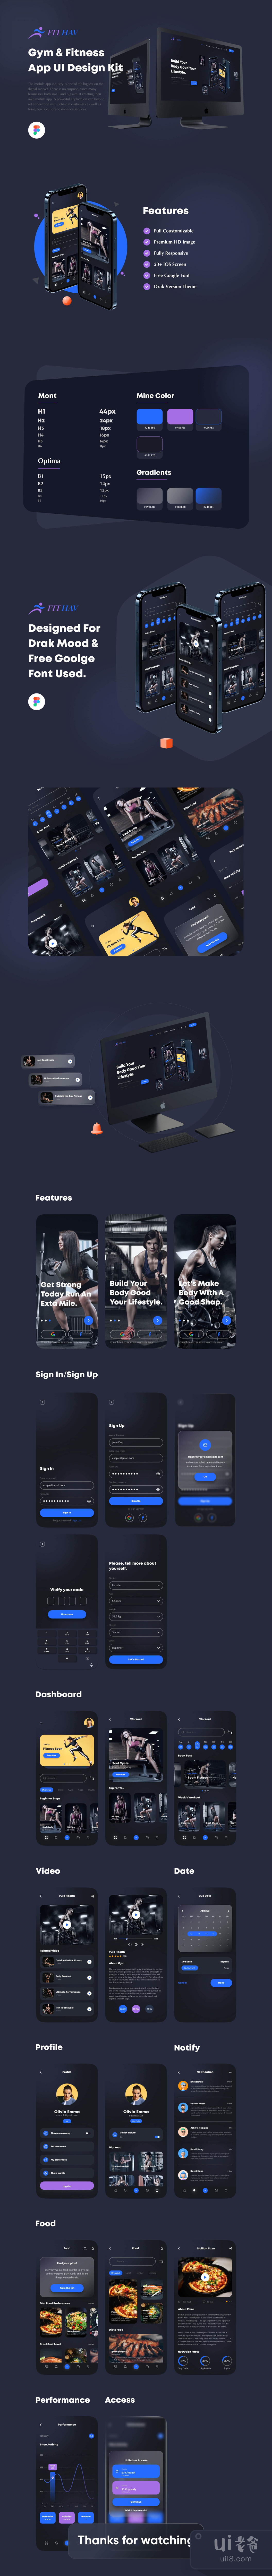 健身房App设计插图